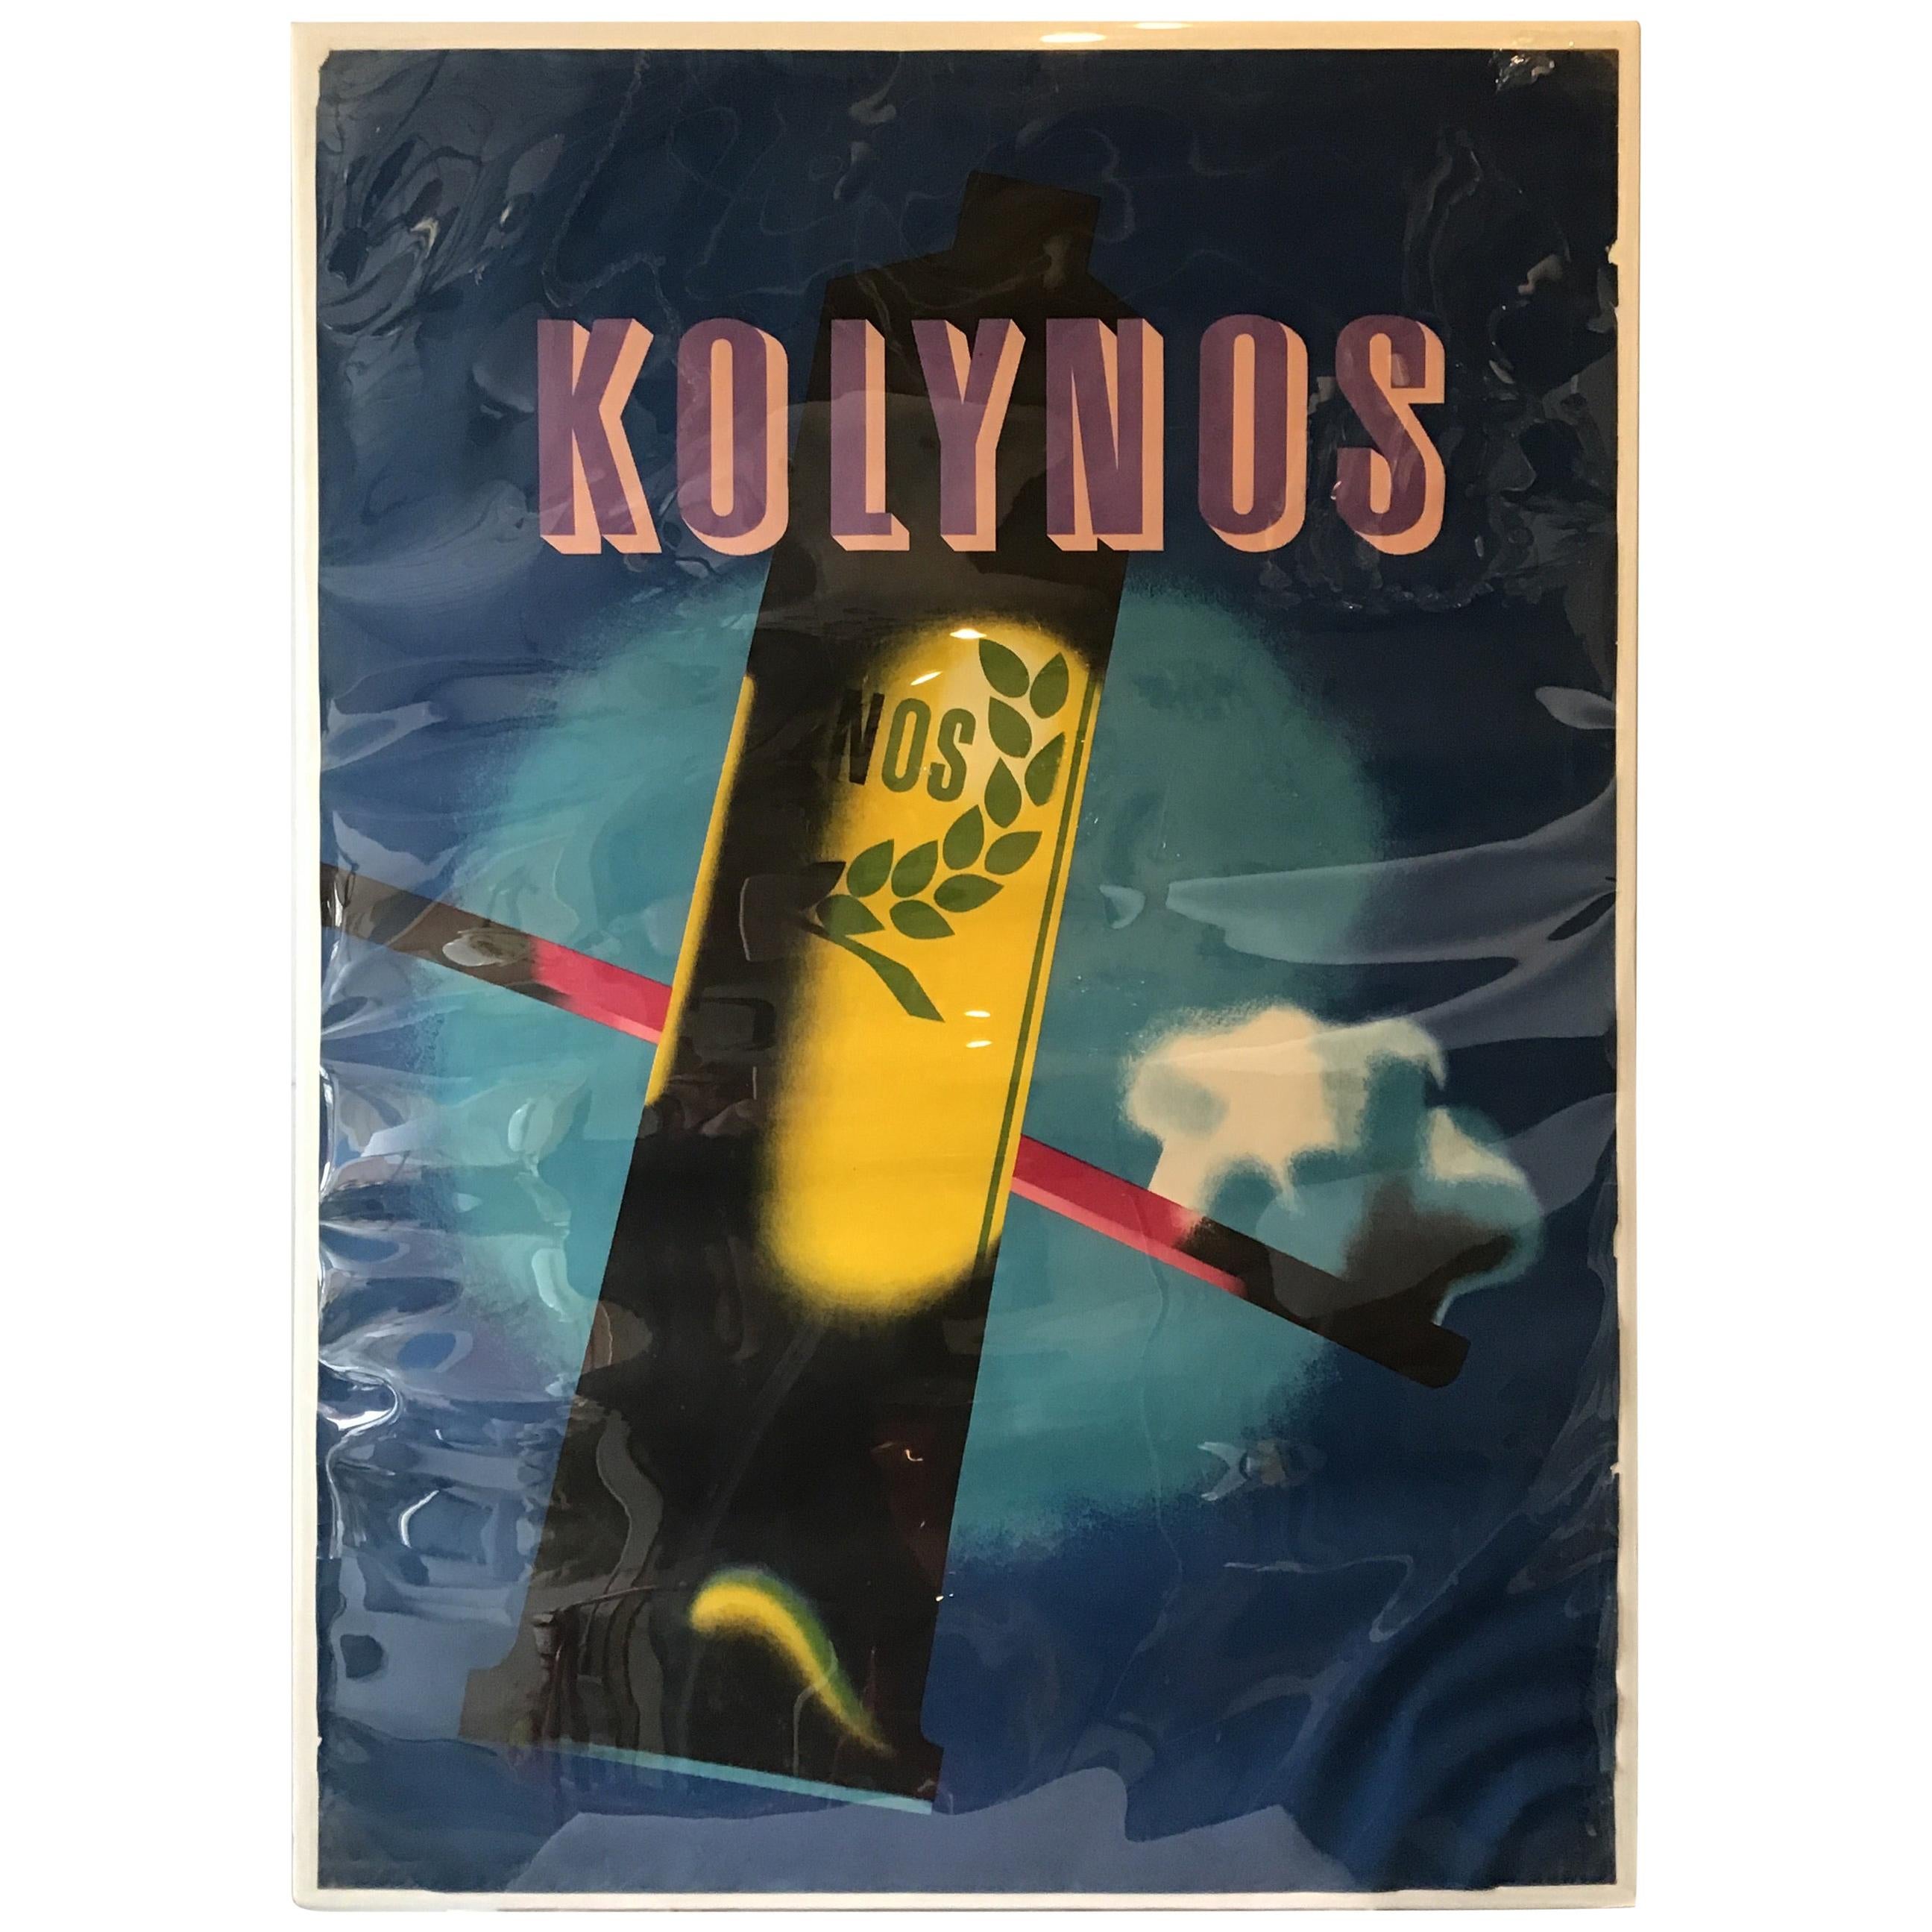 affiche publicitaire pour le dentifrice Kolynos des années 1940